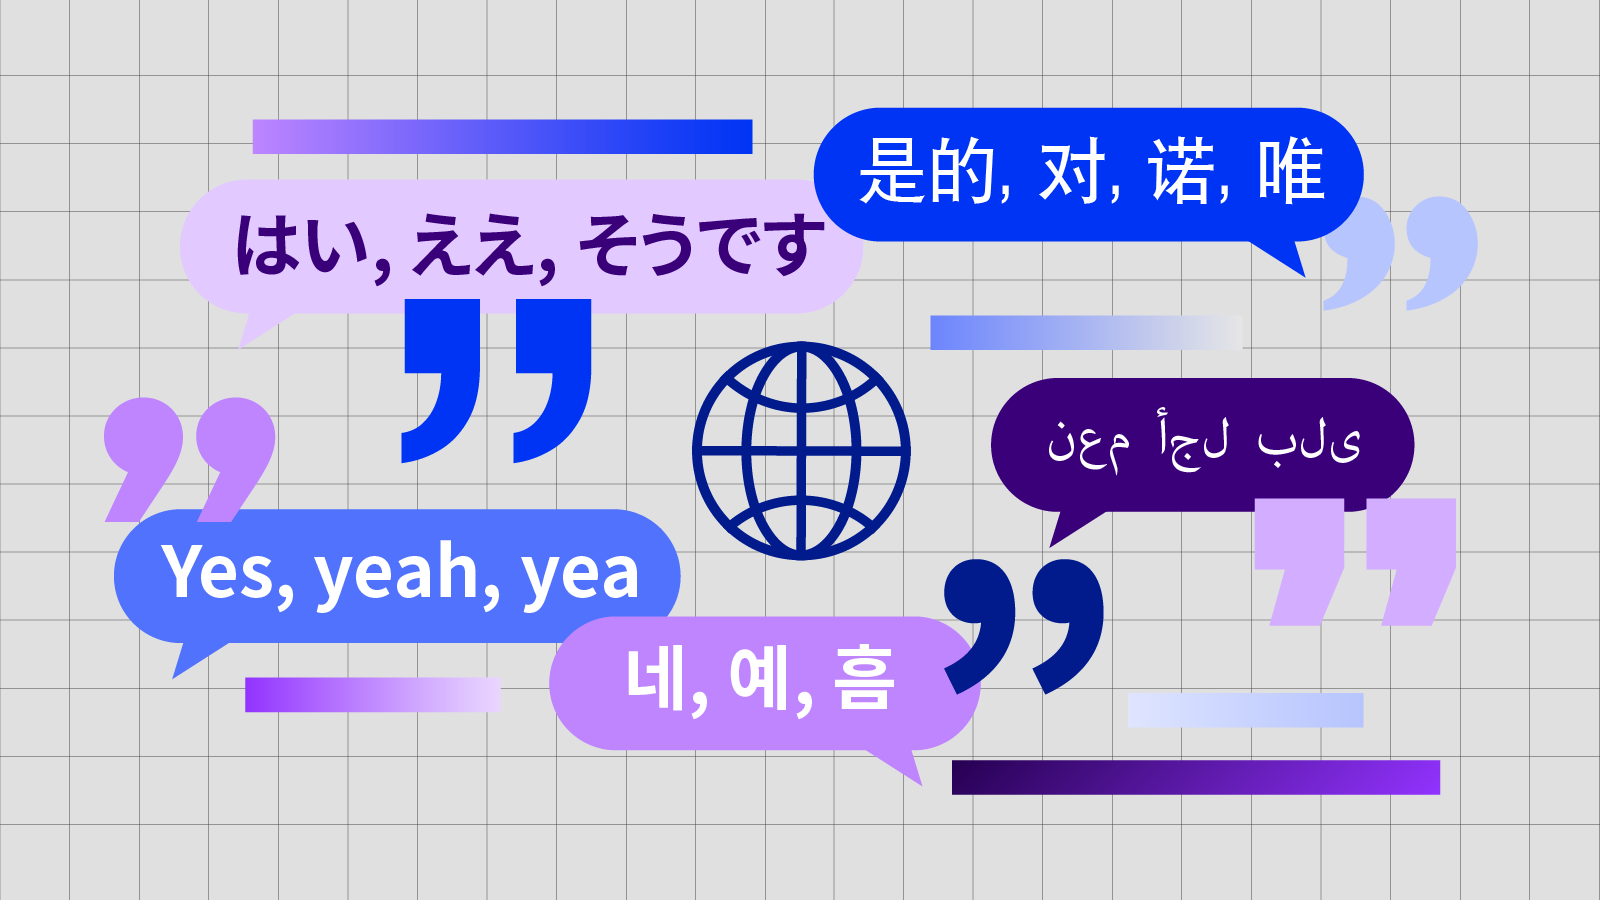 آپ فی الحال دیکھ رہے ہیں۔ Hardest Languages to Translate